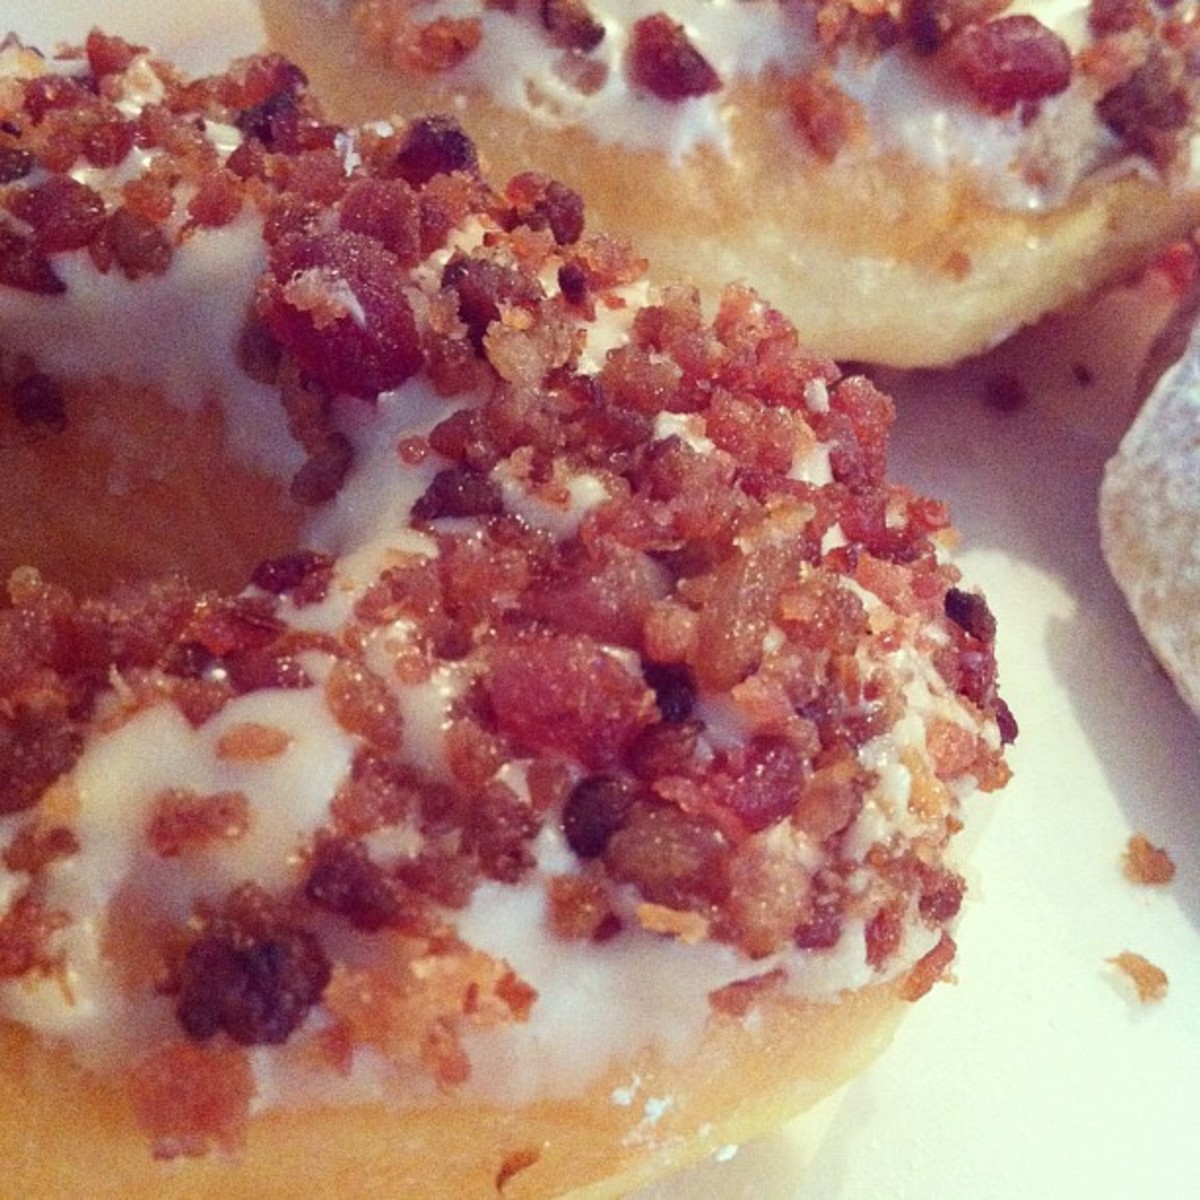 Bacon delight on doughnuts